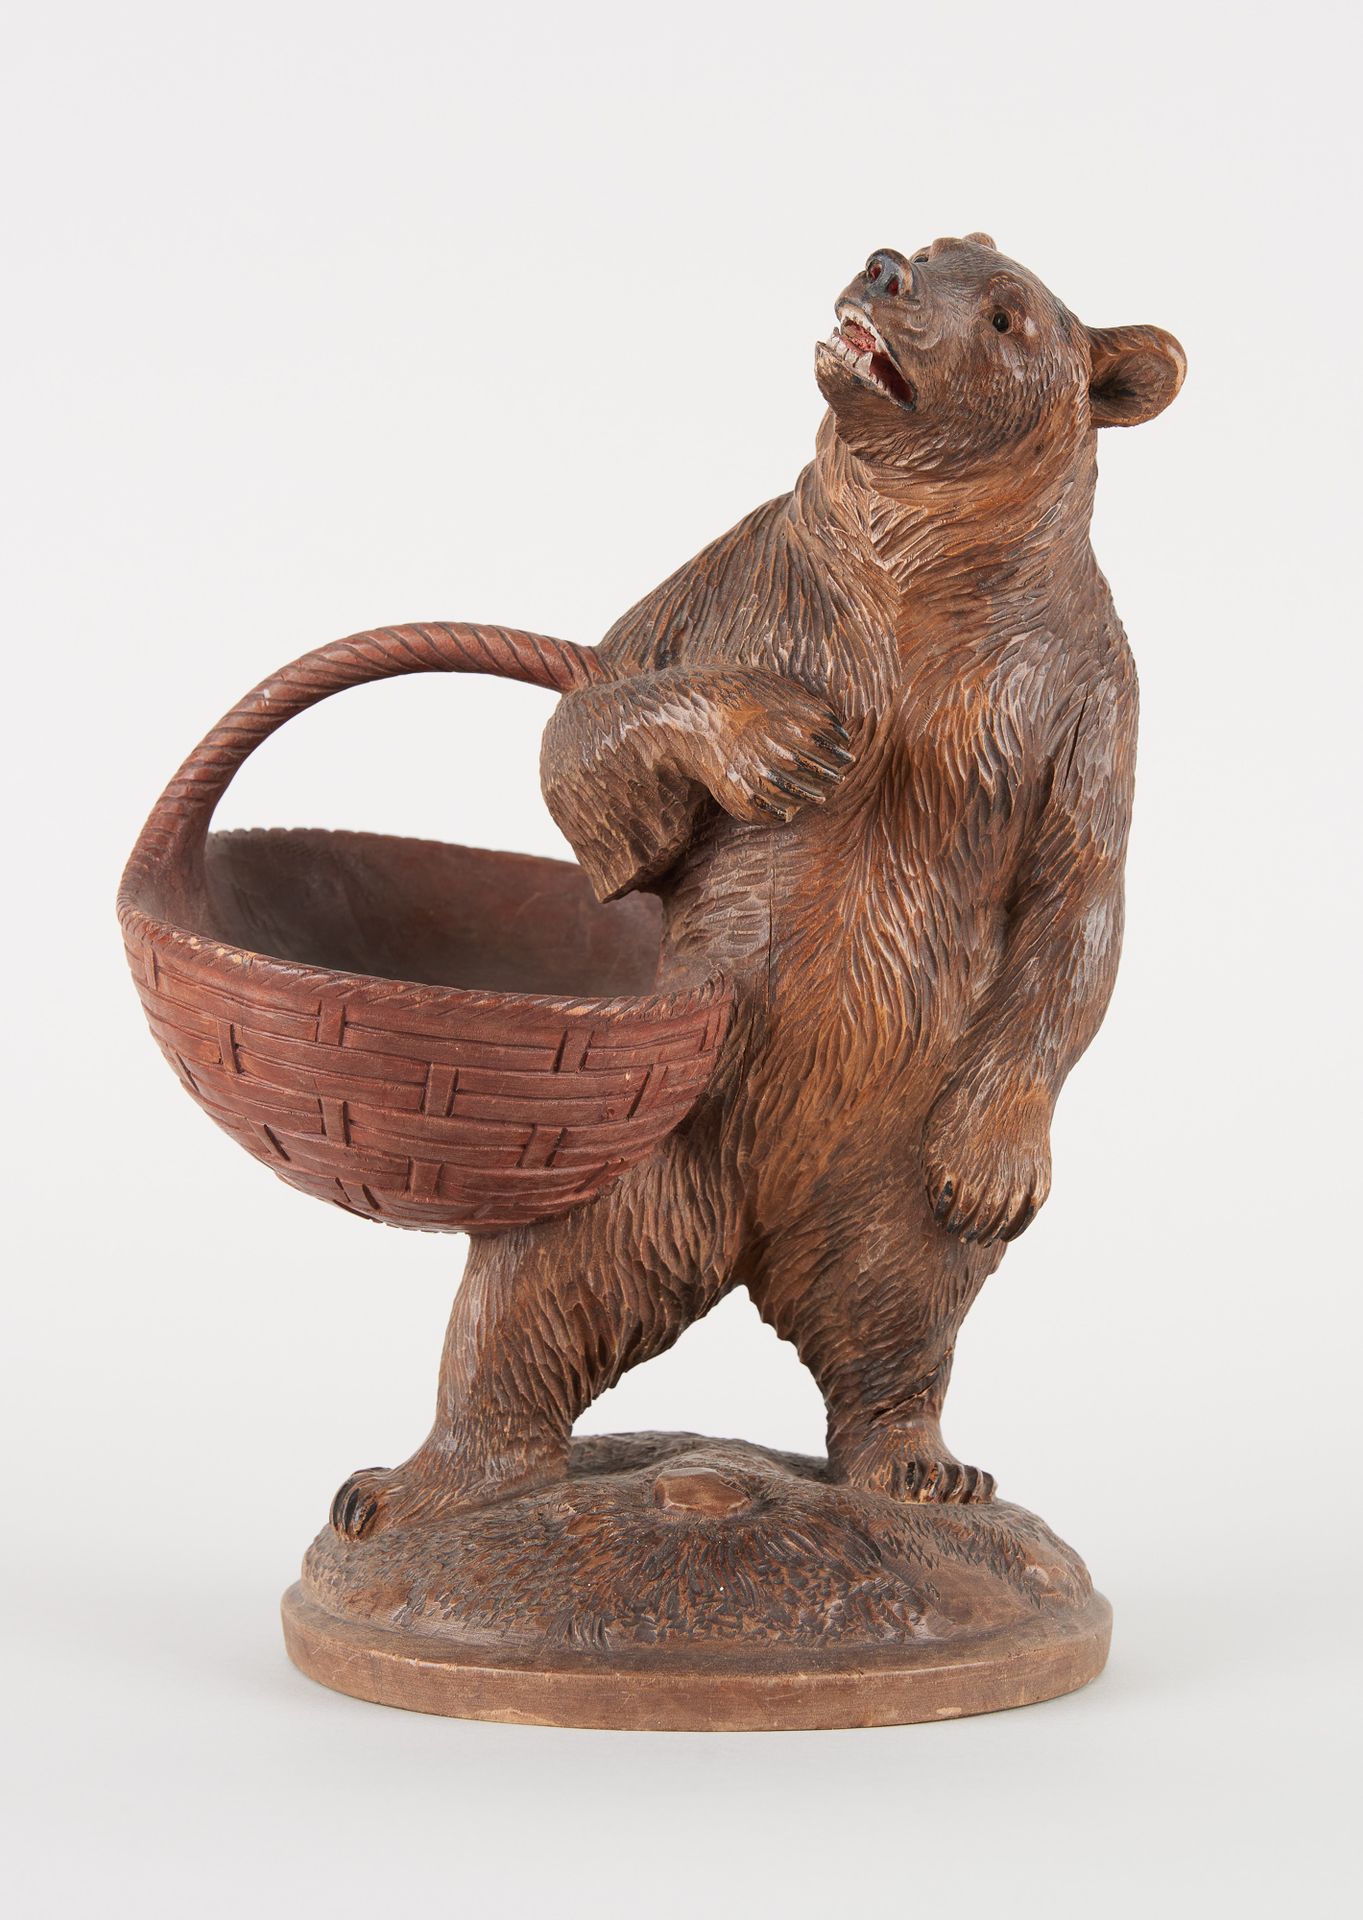 Travail de la Forêt Noire. 天然木雕：熊背着篮子。

尺寸：高31厘米。